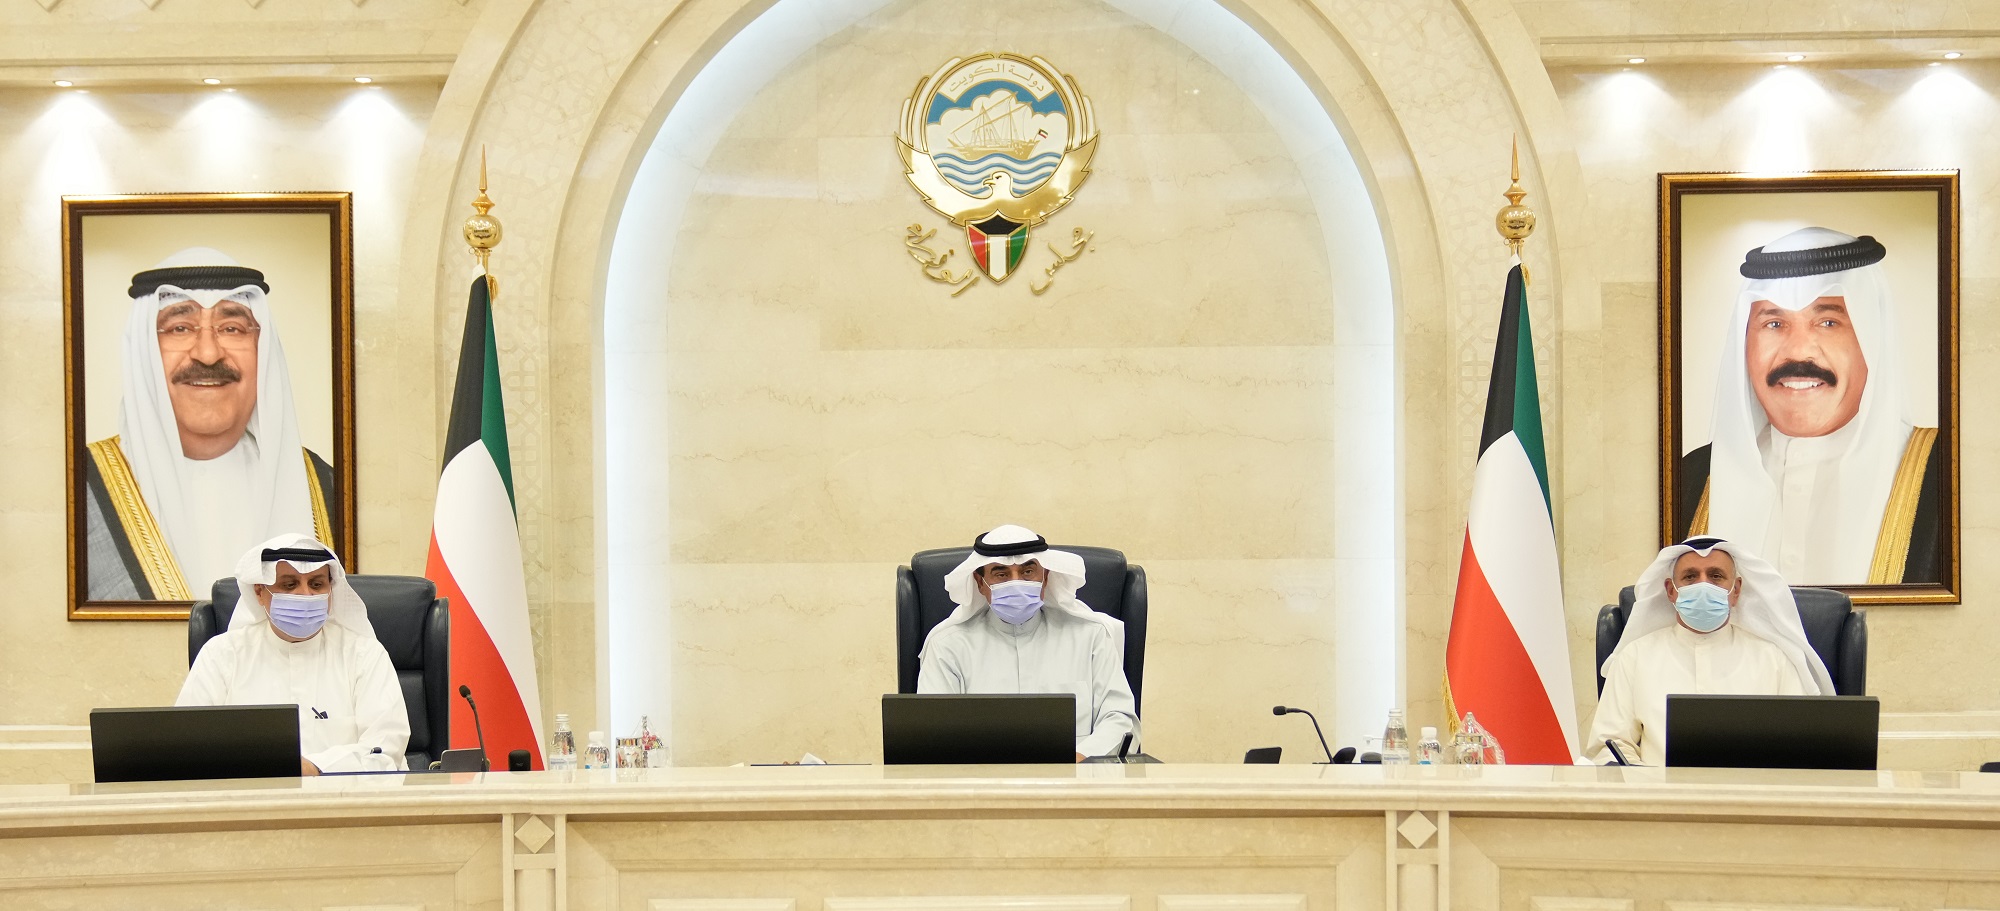 سمو الشيخ صباح خالد الحمد الصباح رئيس مجلس الوزراء يترأس الاجتماع الاستثنائي